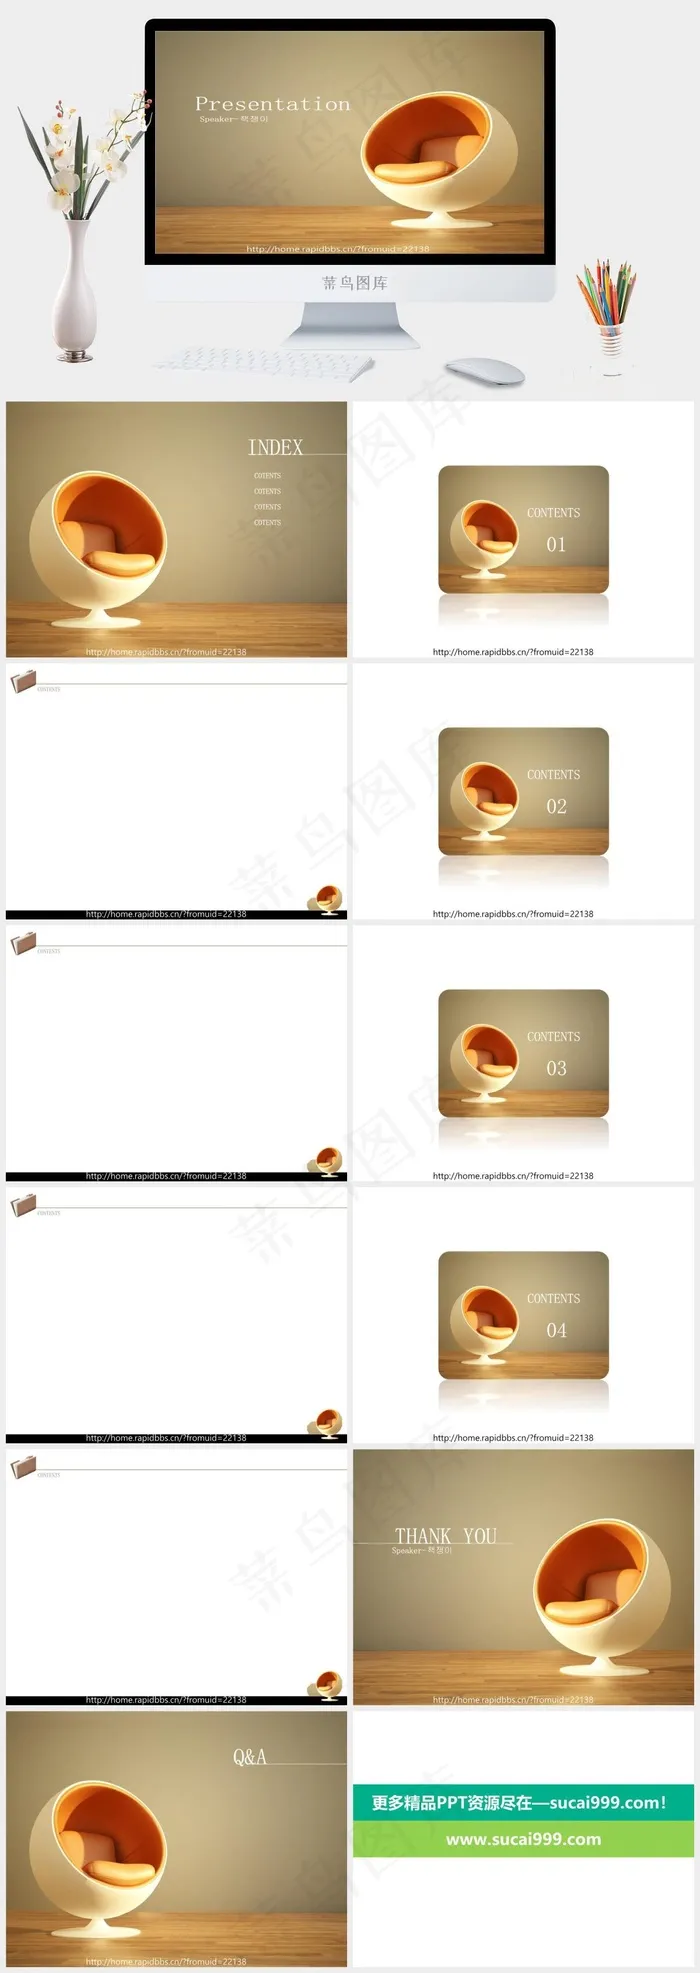 韩国化妆品四PPT模板橘色橙色简洁实景风标准PPT模板